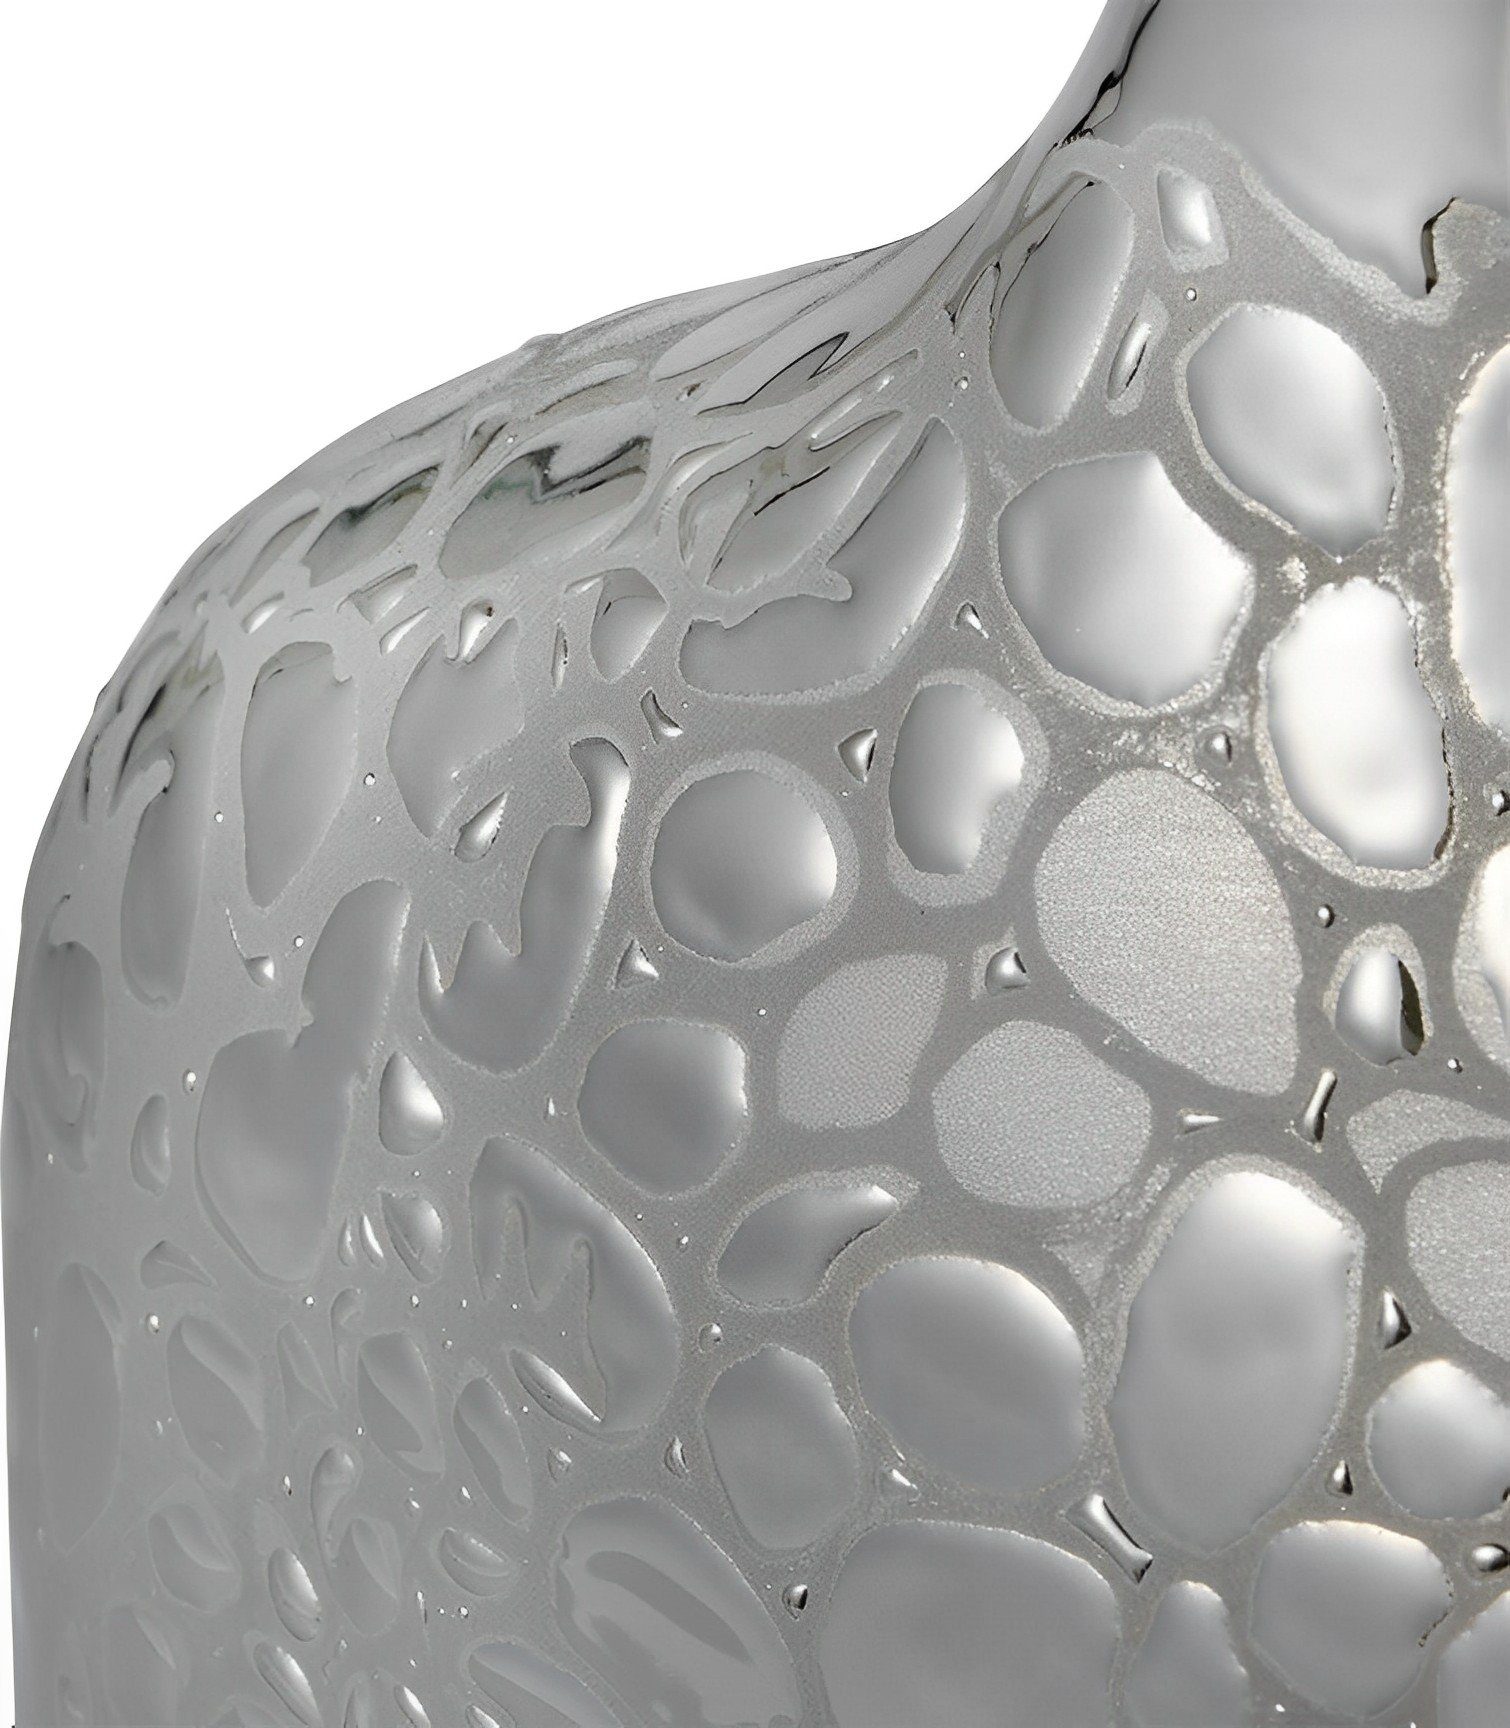 Silber, Vase, Porzellan Dekonaz Verzierte 16x30cm Dekovase Stein